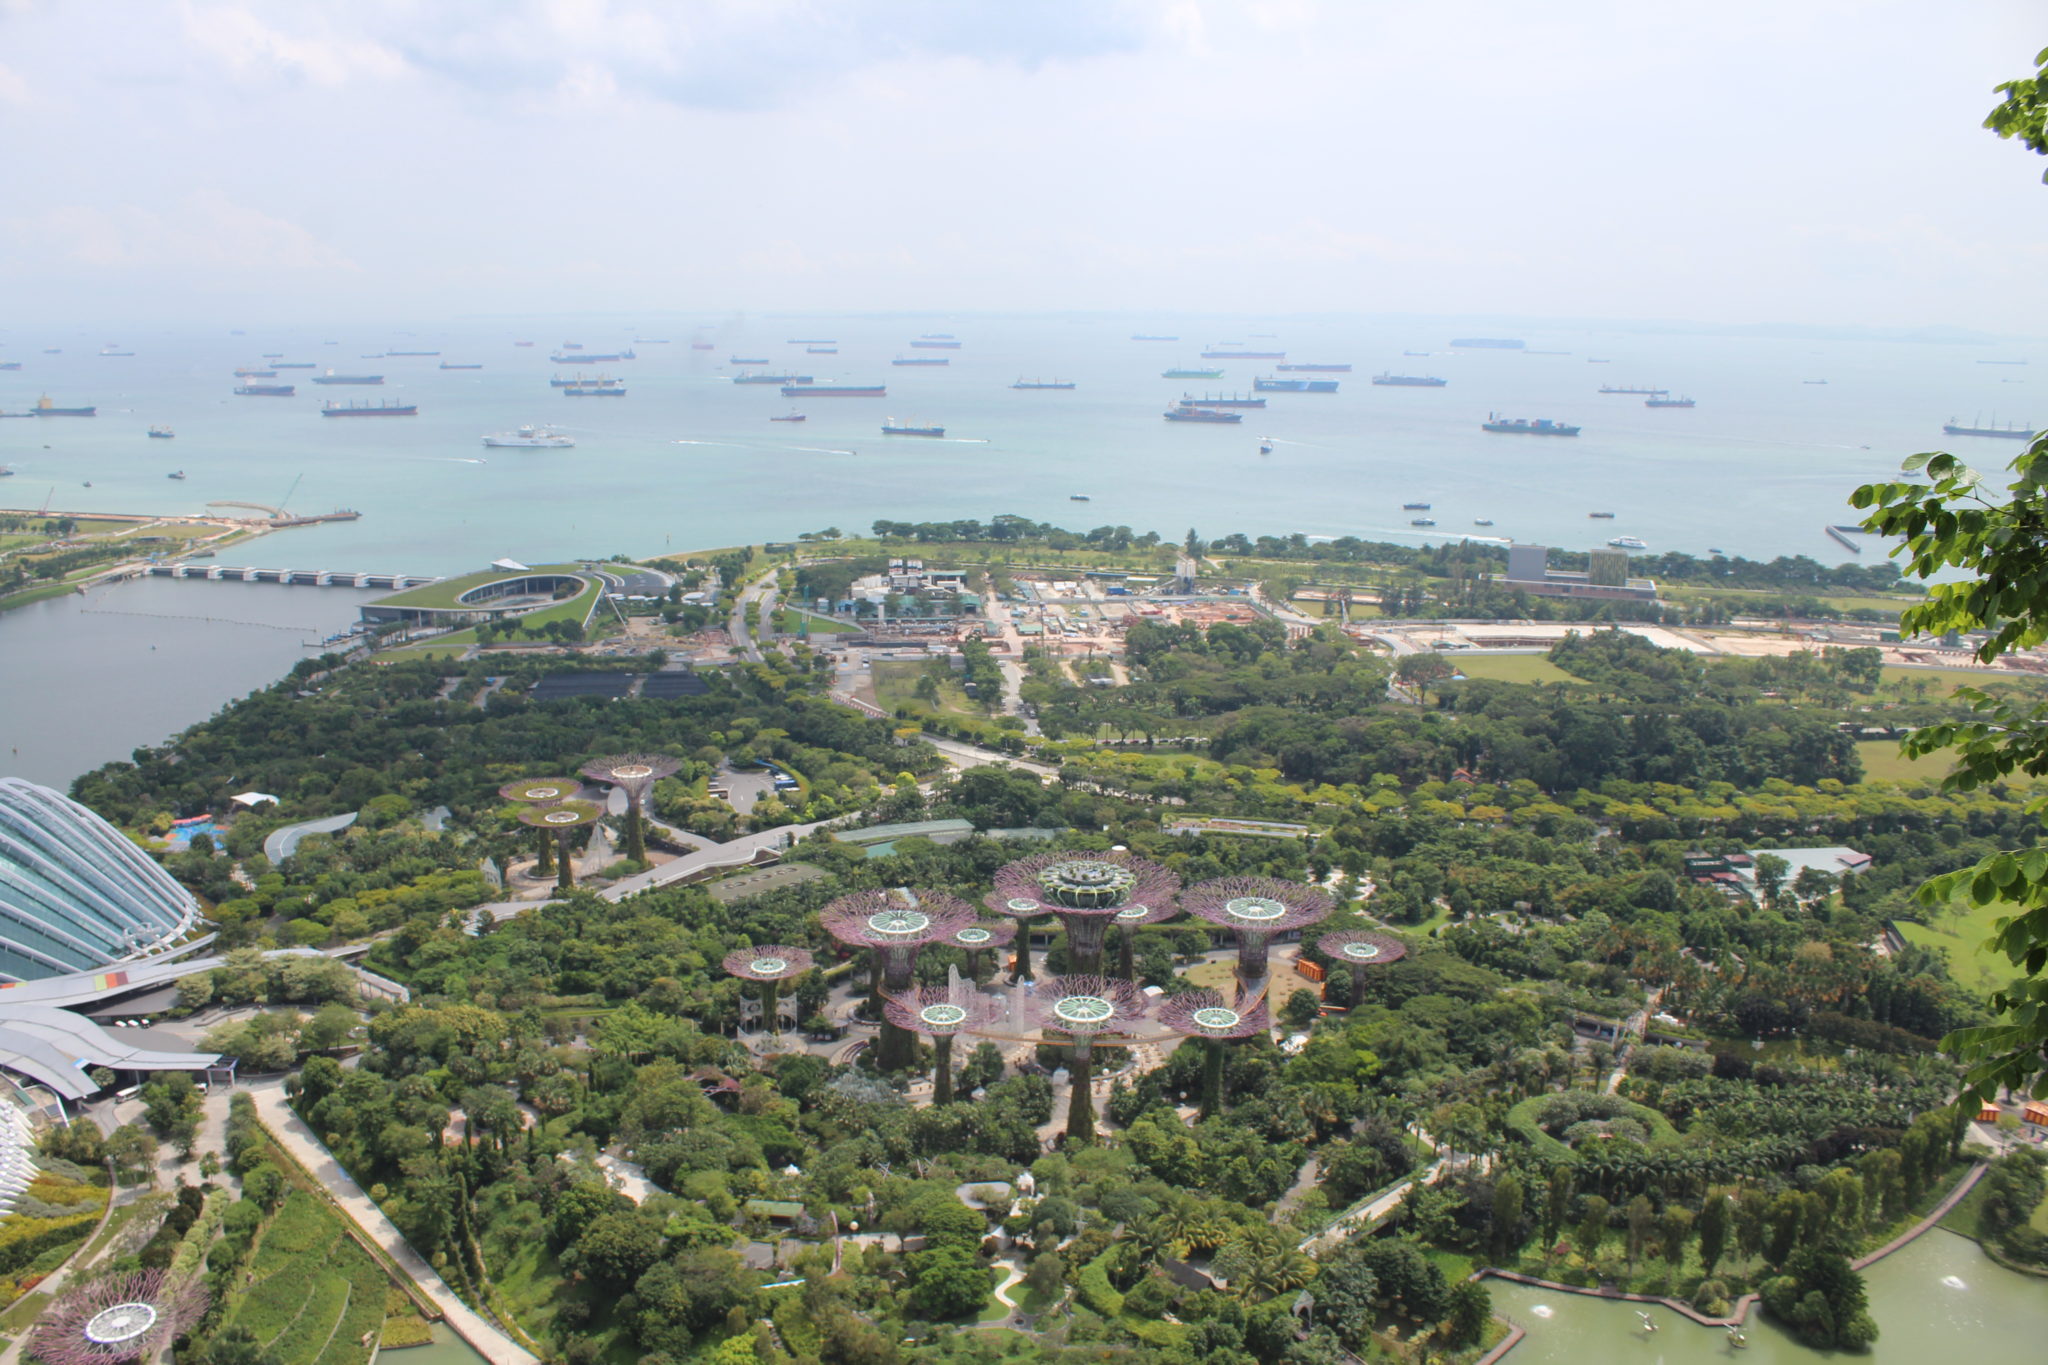 Singapur Sehenswurdigkeiten Top 20 In 2020 Reisefein